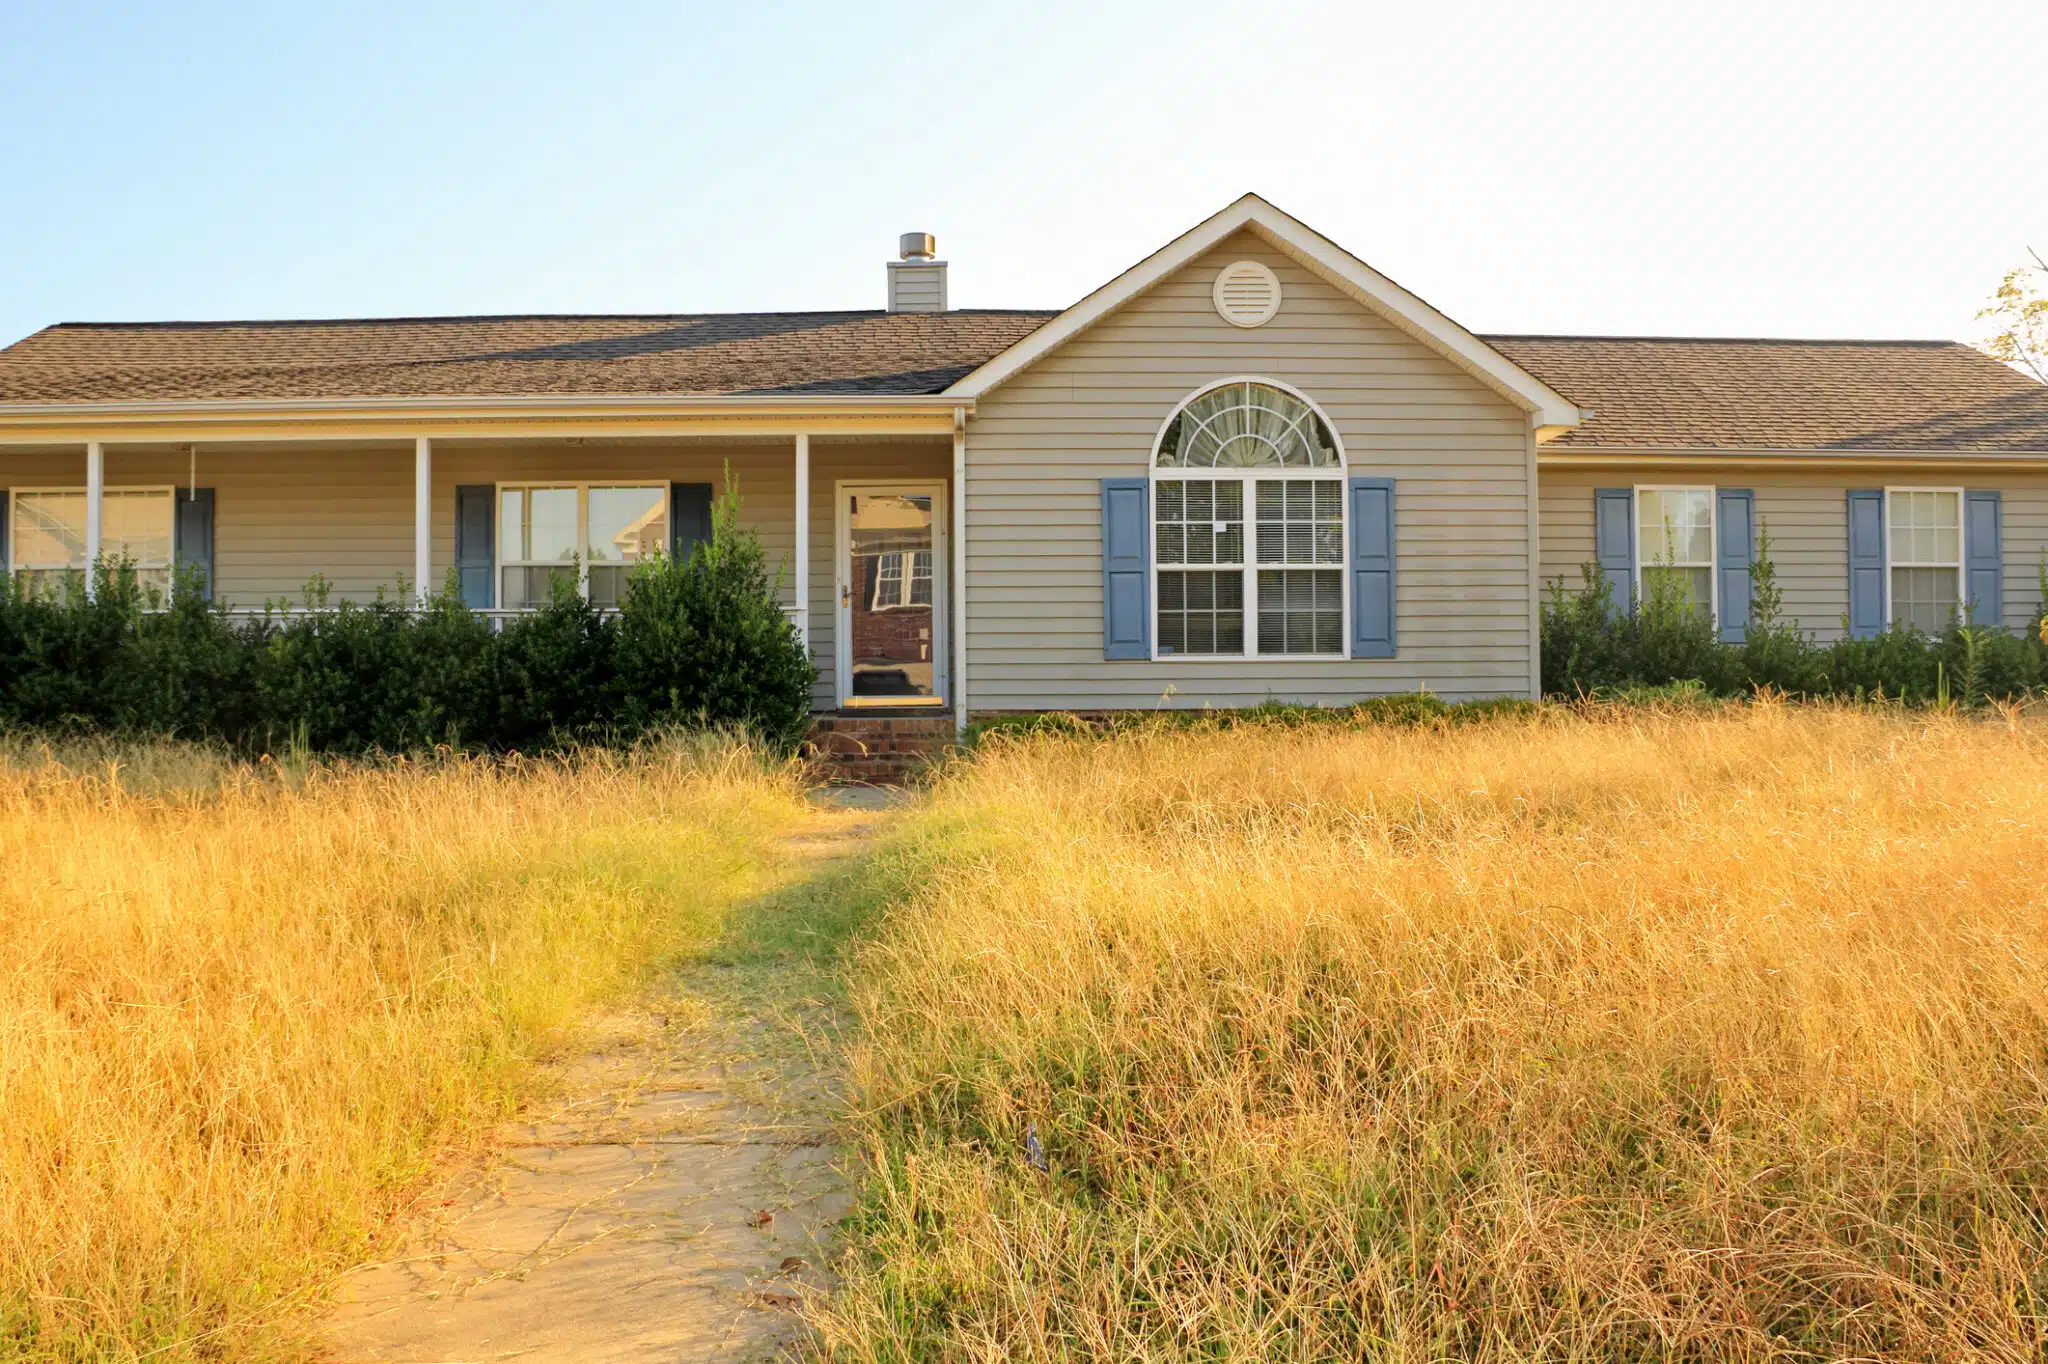 ¿Cómo saber si una casa abandonada tiene un propietario registrado?